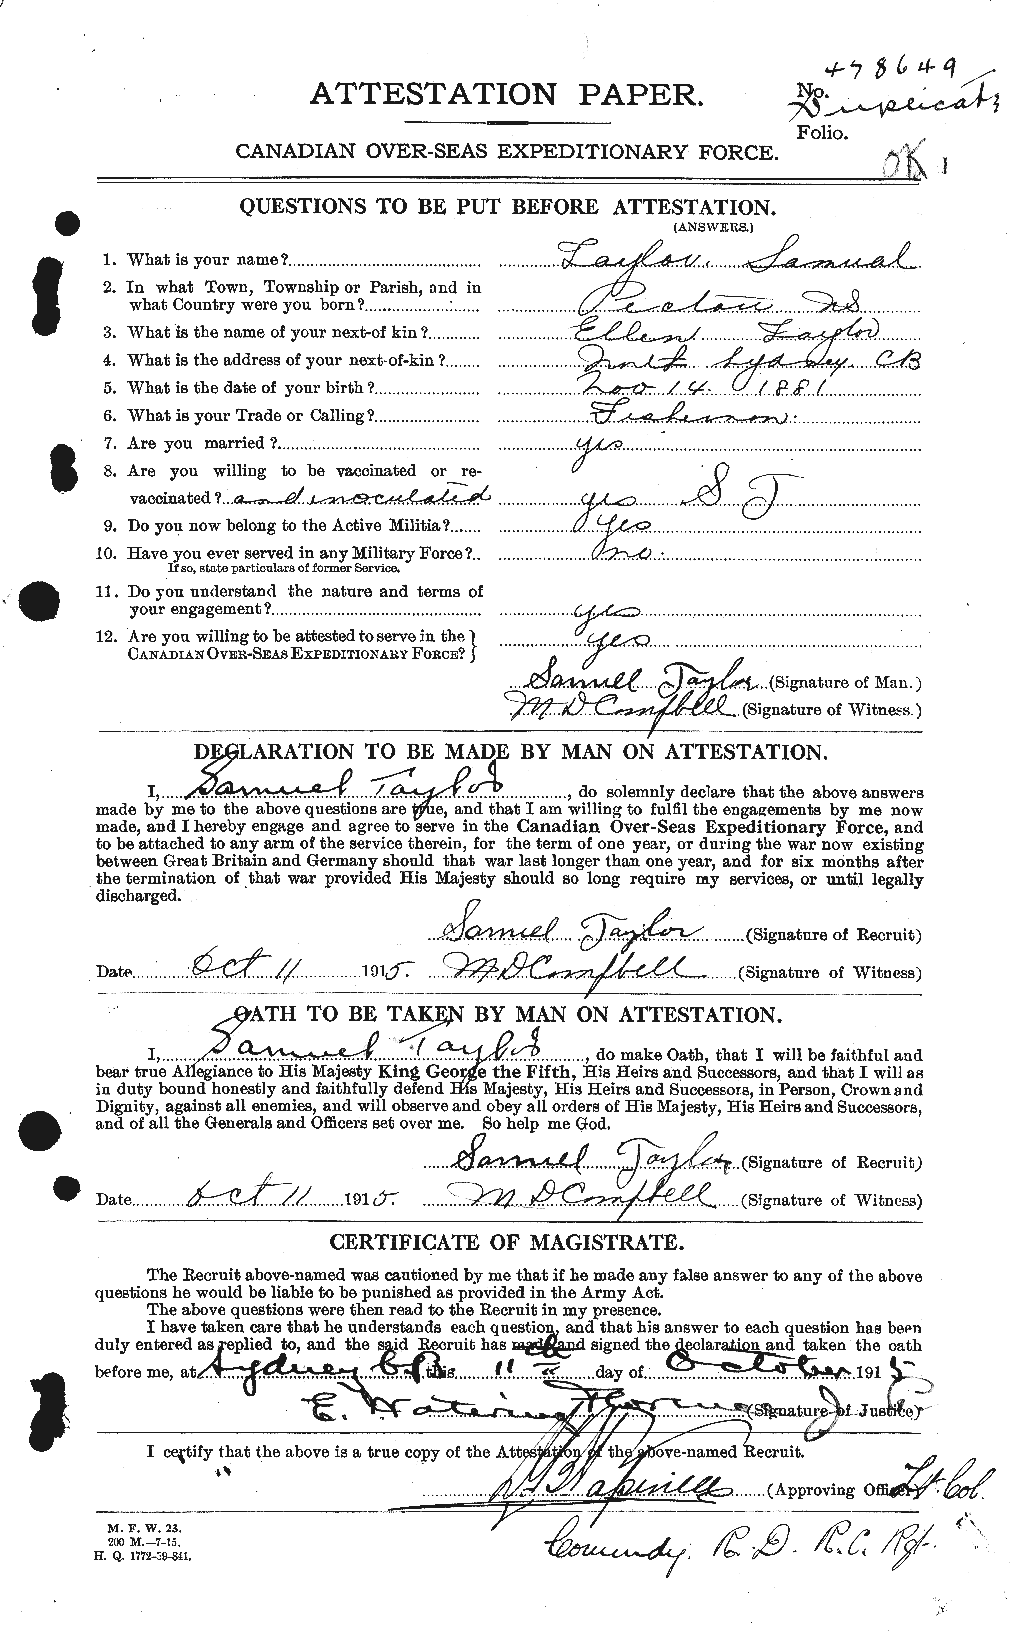 Dossiers du Personnel de la Première Guerre mondiale - CEC 627551a